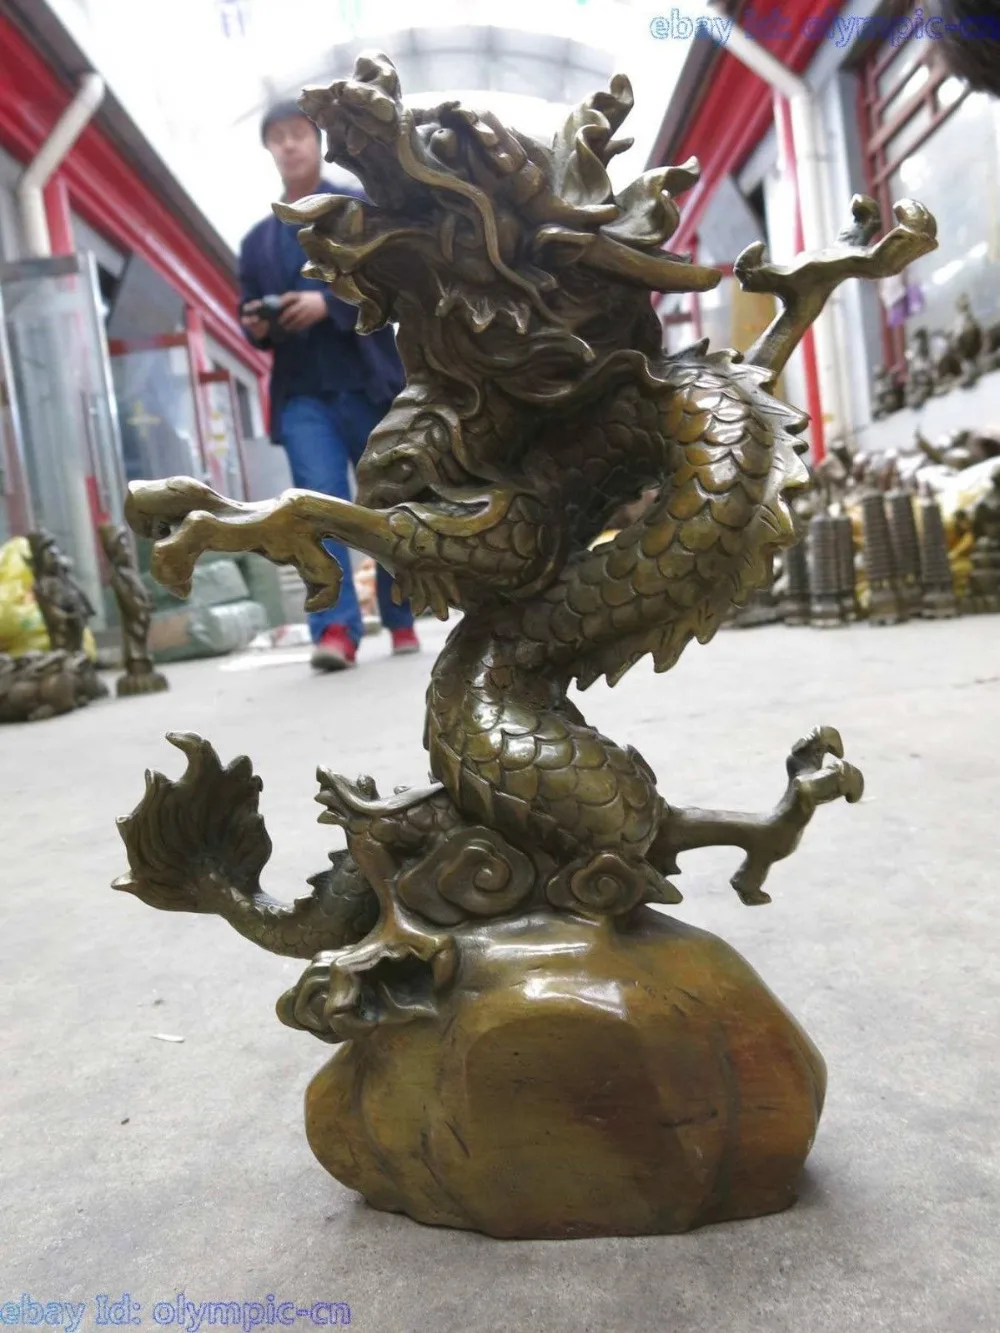 14 "Китай латунь тонкой работы круг вокруг дракона на каменной скульптуры статуя сад бронза медь украшение настоящая латунь